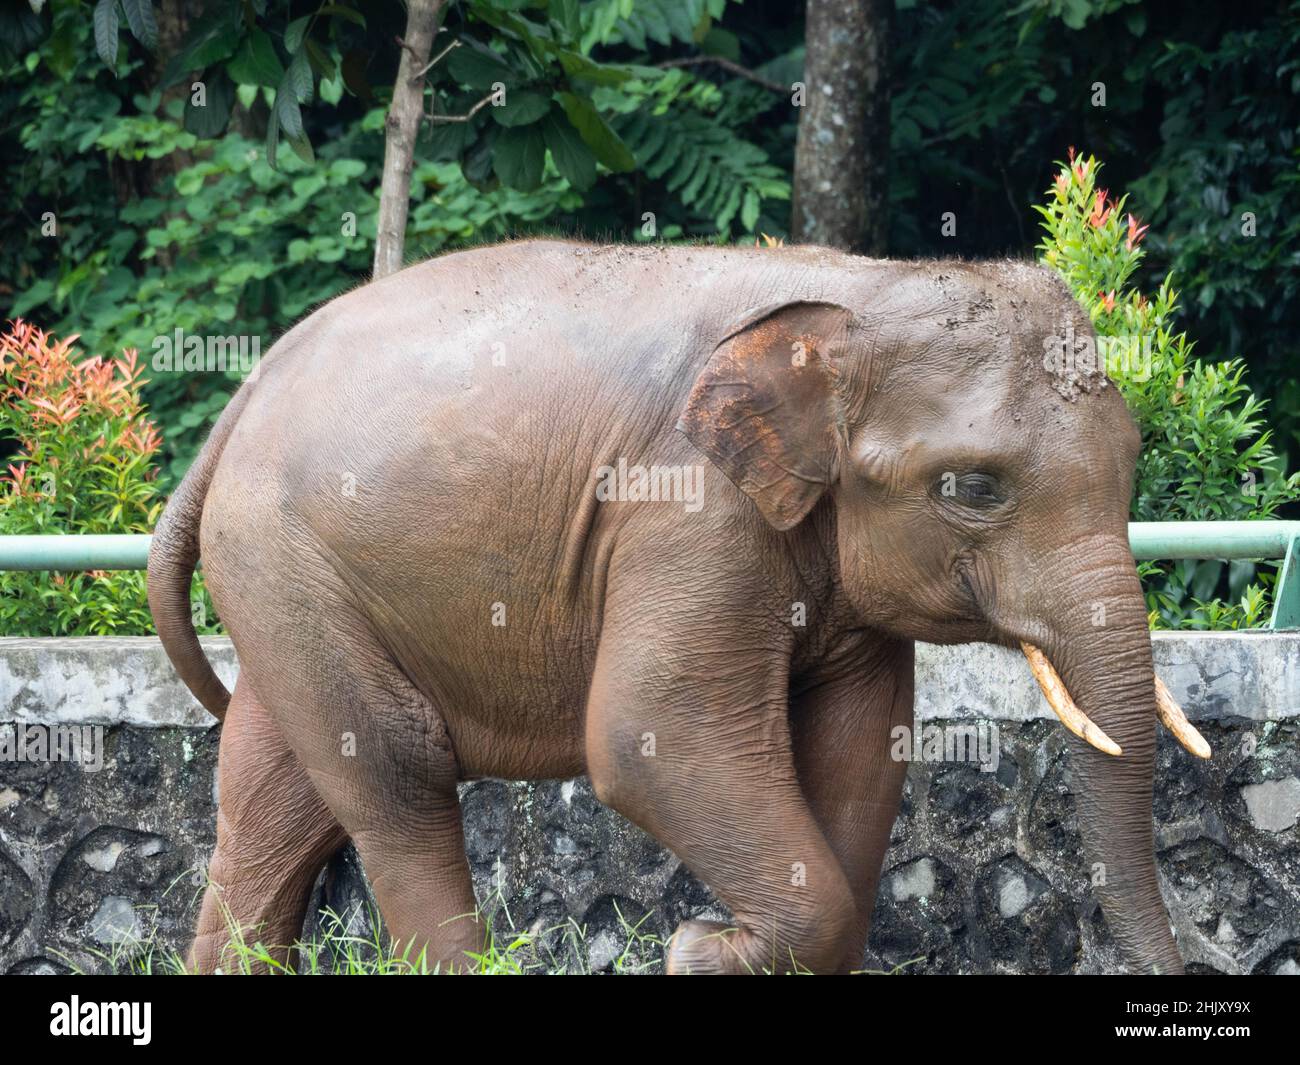 Photo des éléphants dans un zoo après avoir pris un bain de boue Banque D'Images